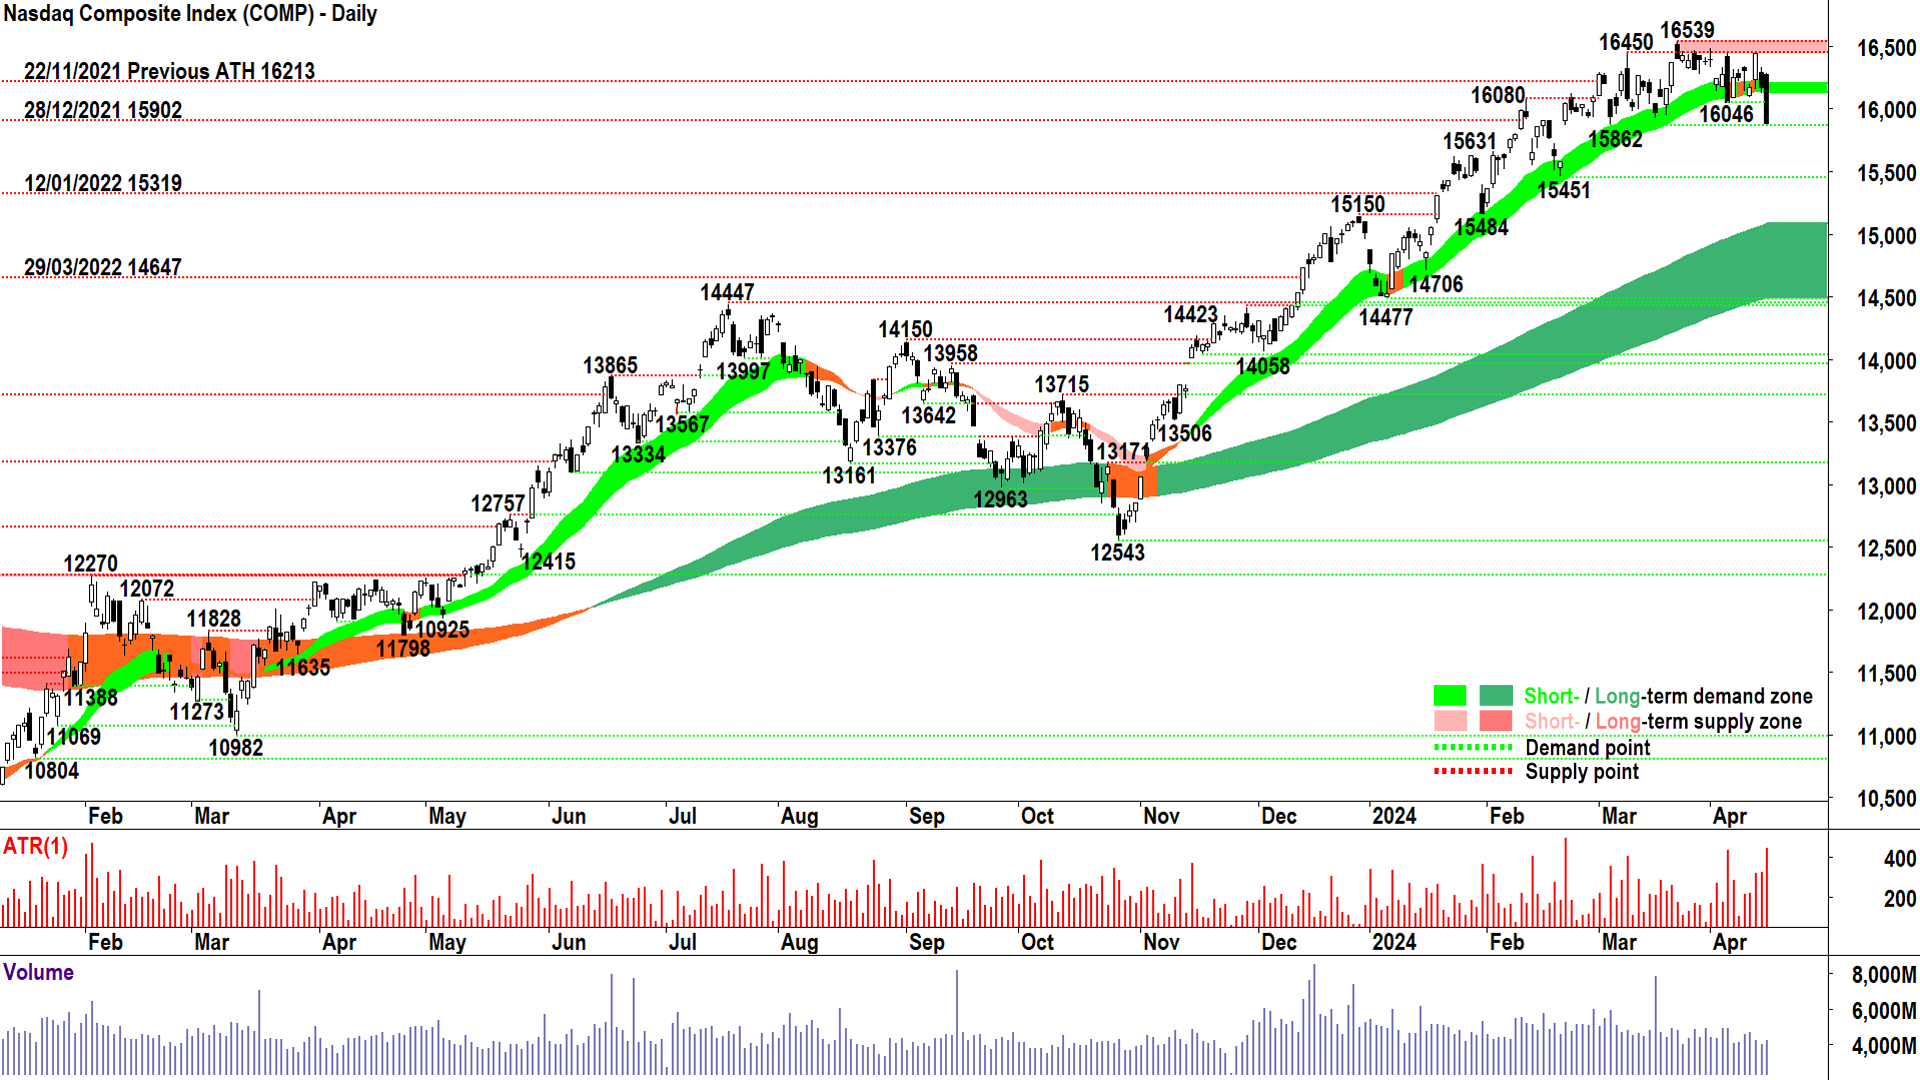 NASDAQ Composite Index chart 15 April